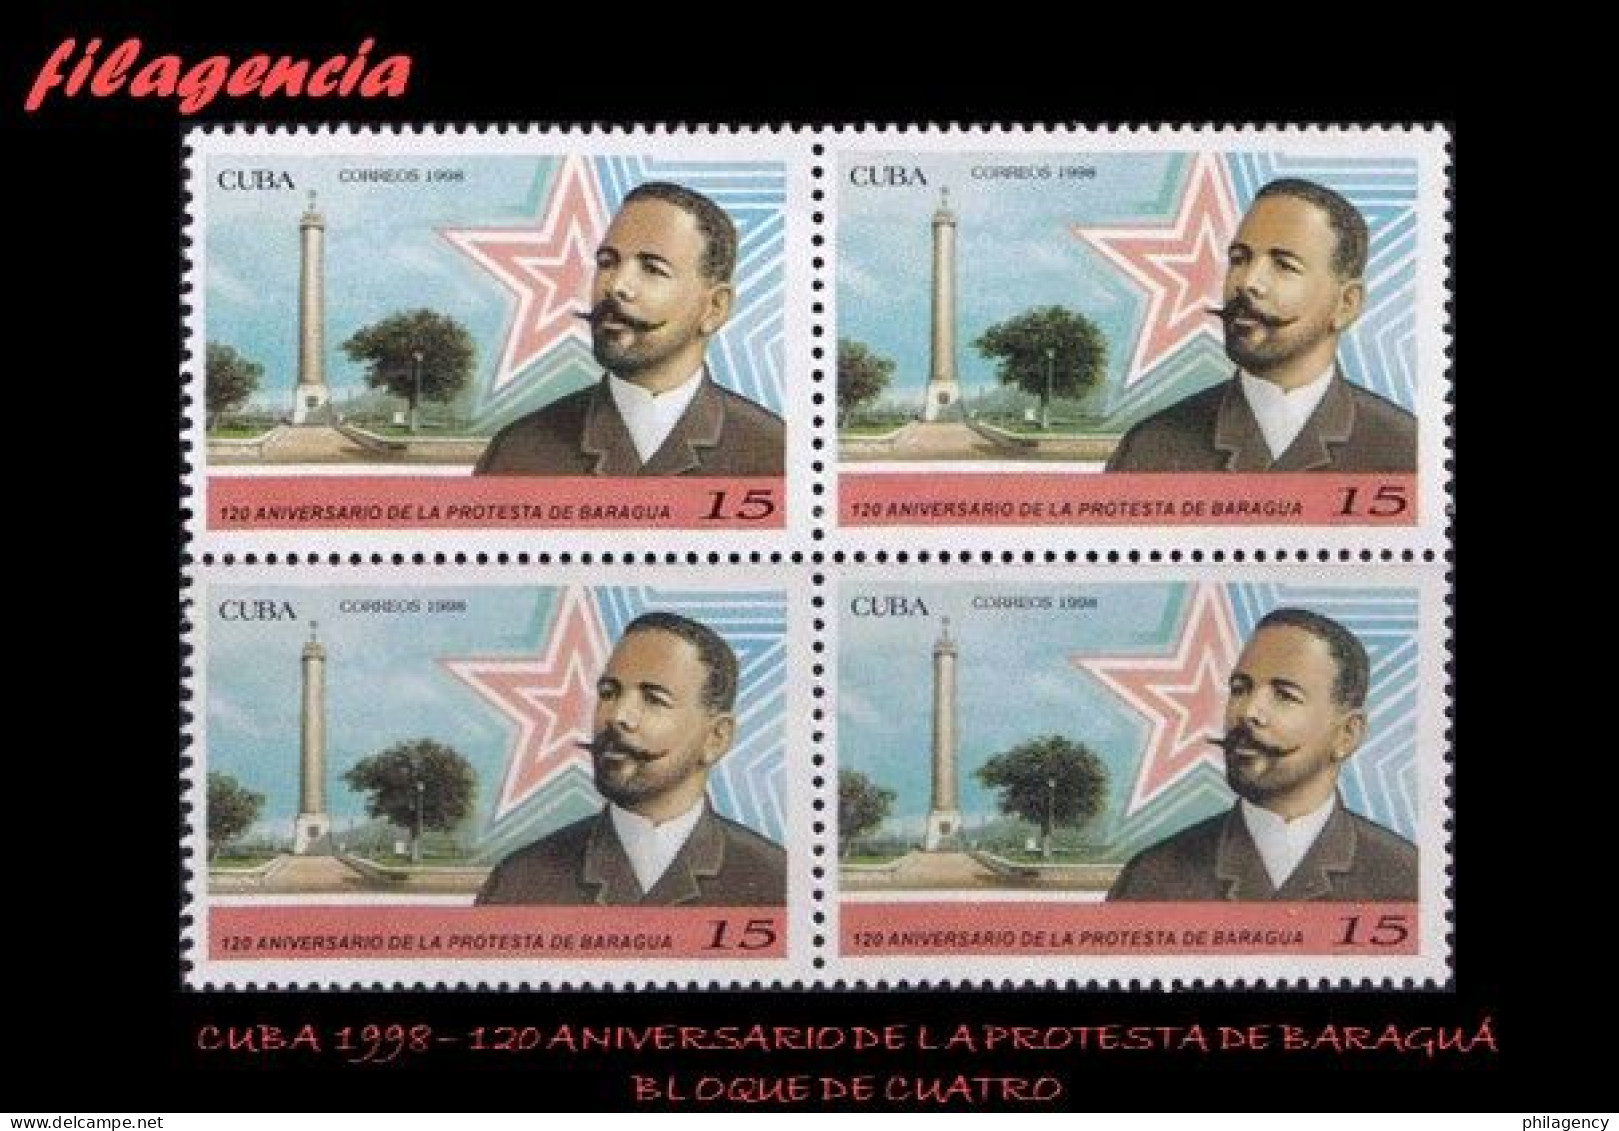 CUBA. BLOQUES DE CUATRO. 1998-08 120 ANIVERSARIO DE LA PROTESTA DE BARAGUÁ - Unused Stamps